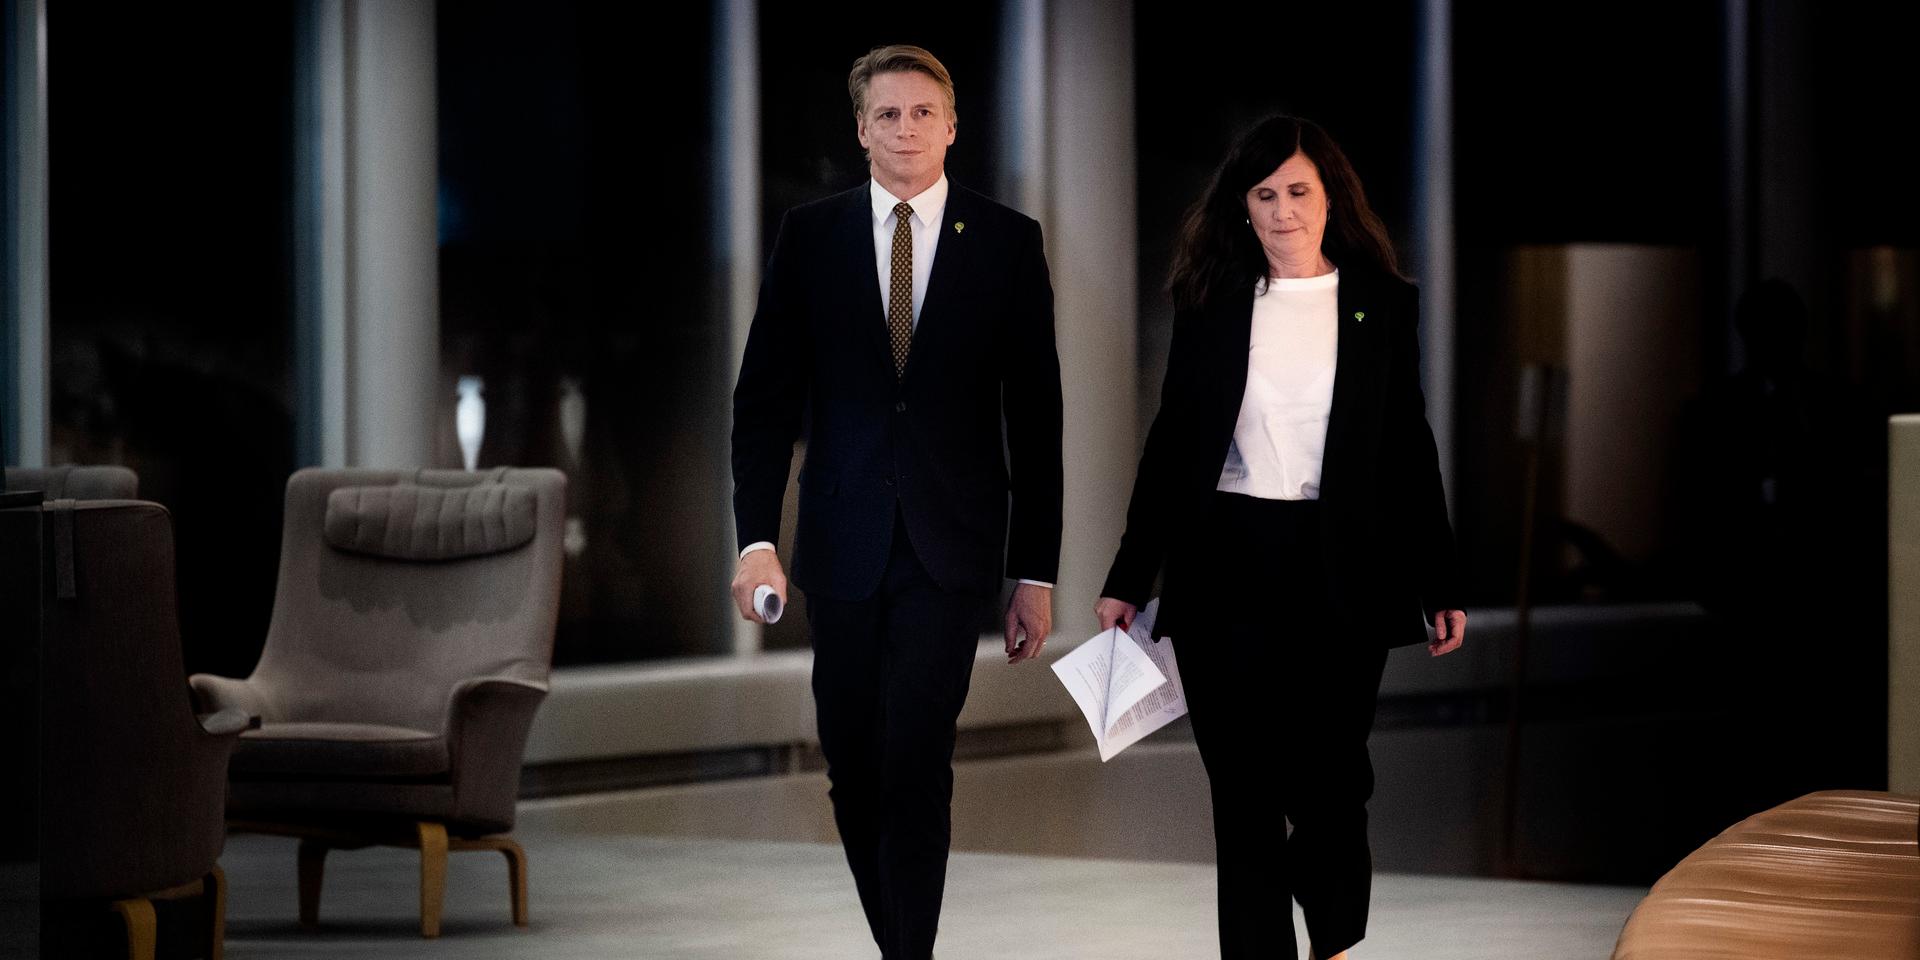 Miljöpartiets språkrör Per Bolund och Märta Stenevi på väg mot en pressträff efter budgetomröstningen i riksdagen på onsdagen.